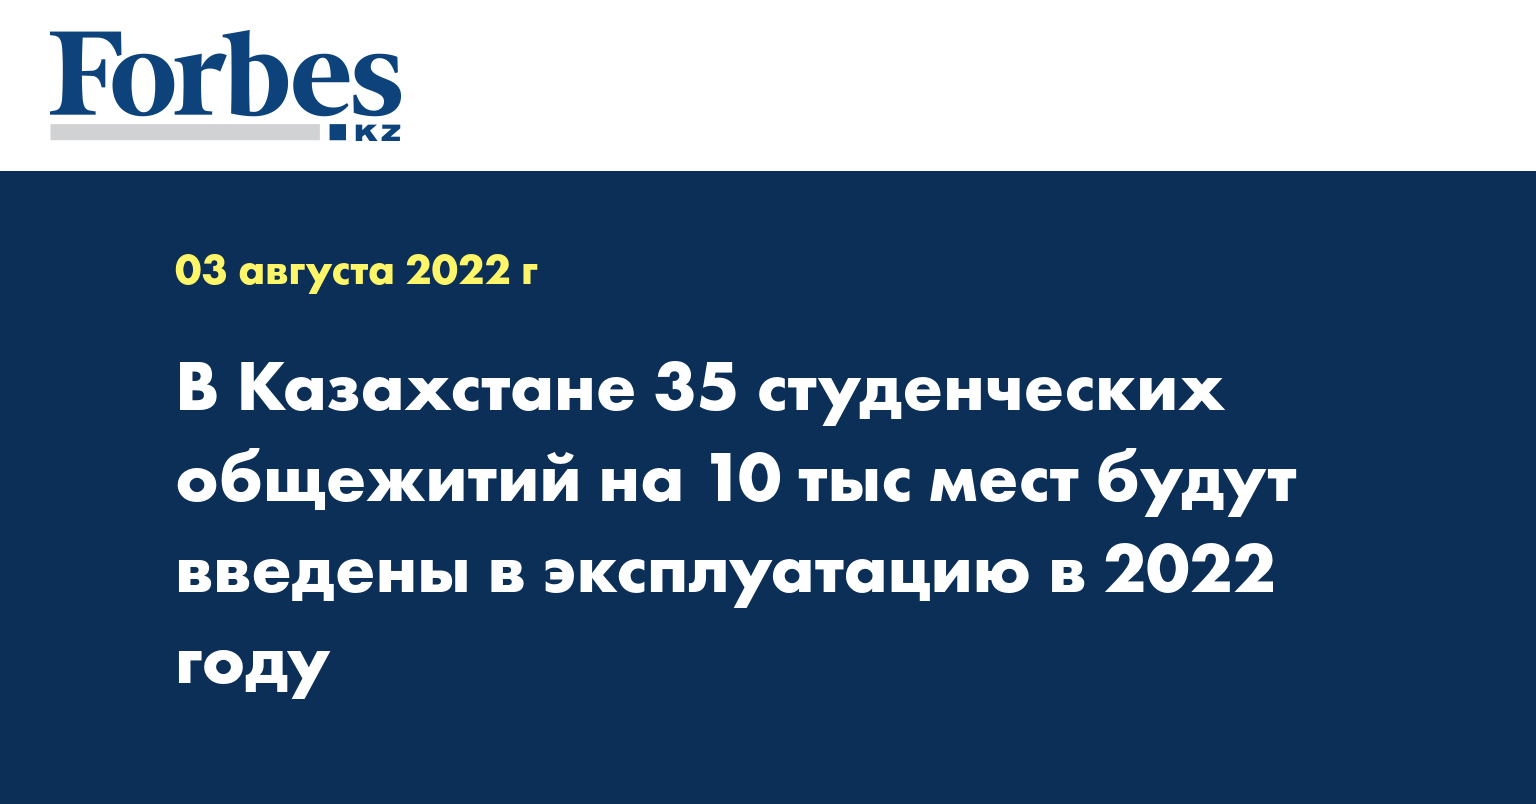 В Казахстане 35 студенческих общежитий на 10 тыс мест будут введены в эксплуатацию в 2022 году